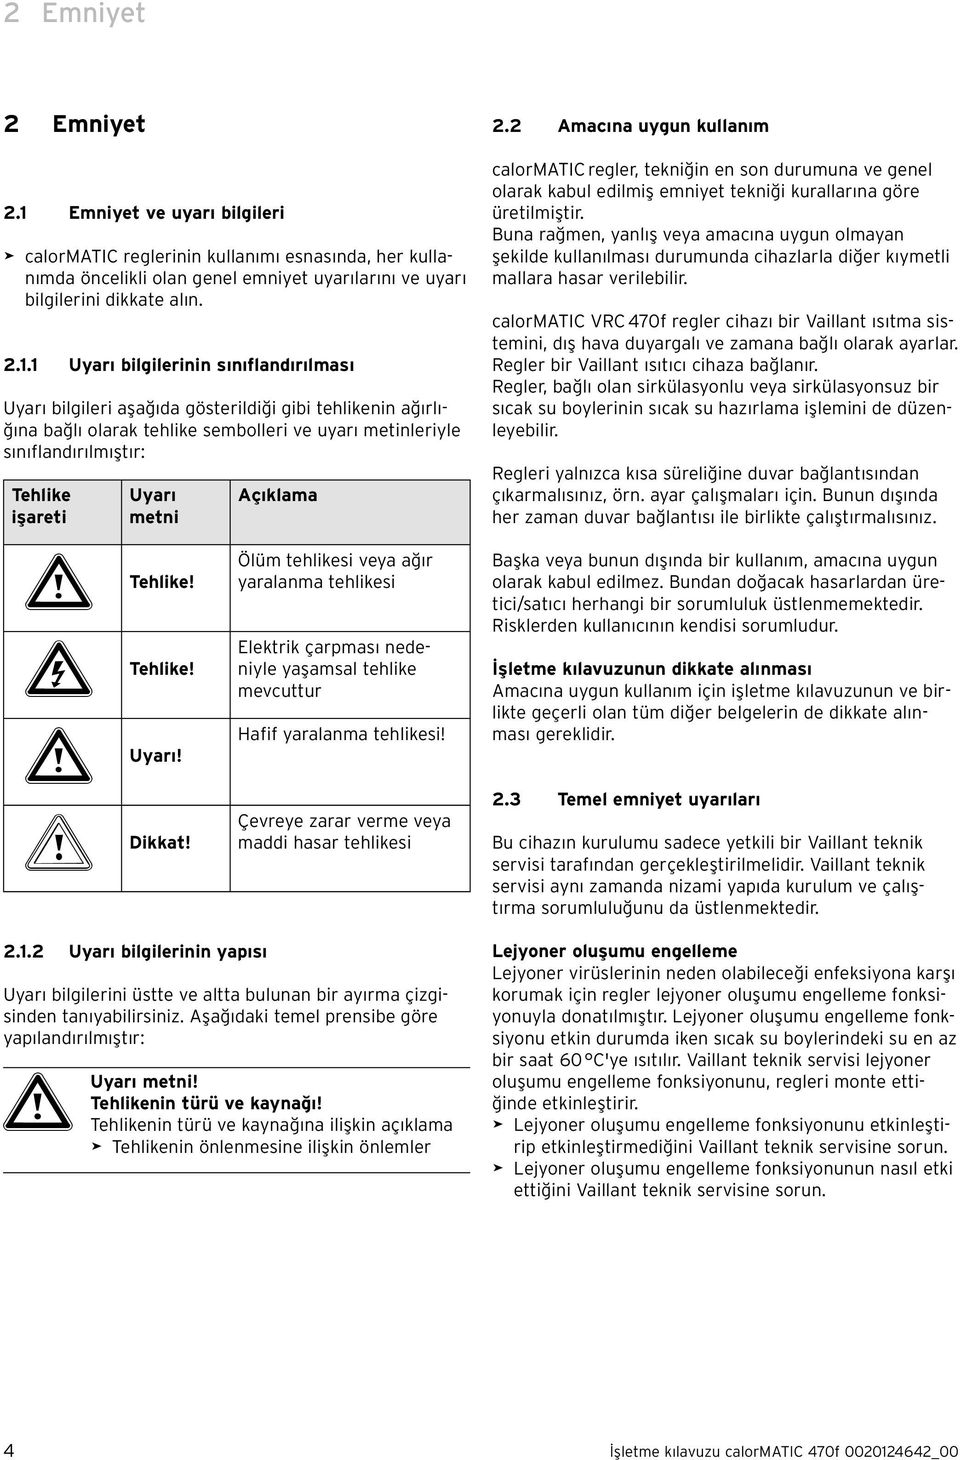 1 Uyarı bilgilerinin sınıflandırılması Uyarı bilgileri aşağıda gösterildiği gibi tehlikenin ağırlığına bağlı olarak tehlike sembolleri ve uyarı metinleriyle sınıflandırılmıştır: Tehlike işareti Uyarı